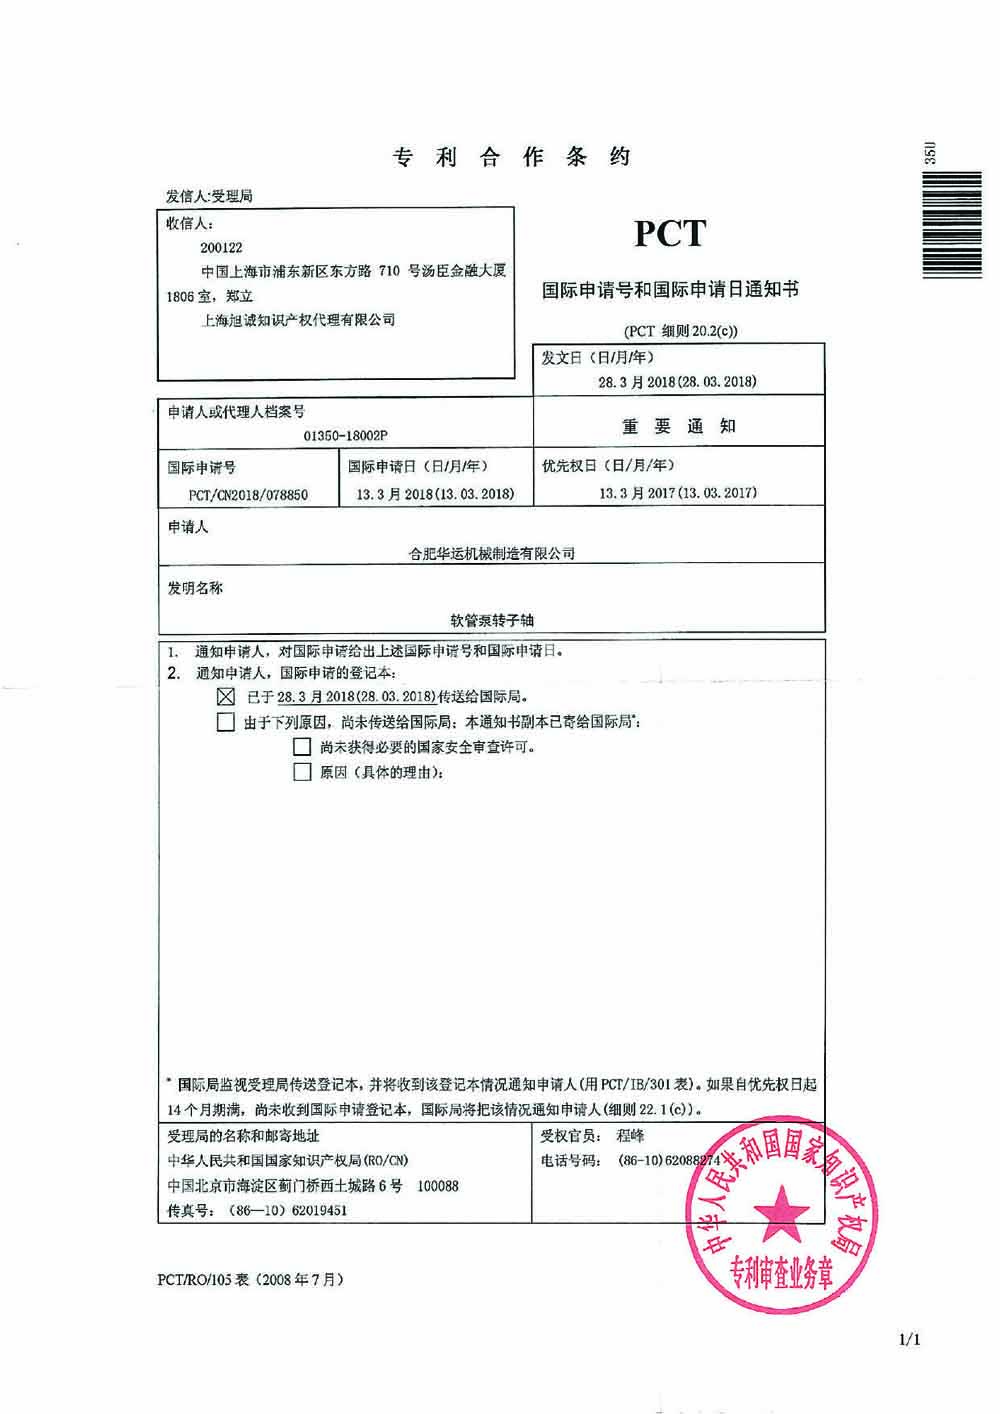 PCT patente internacional